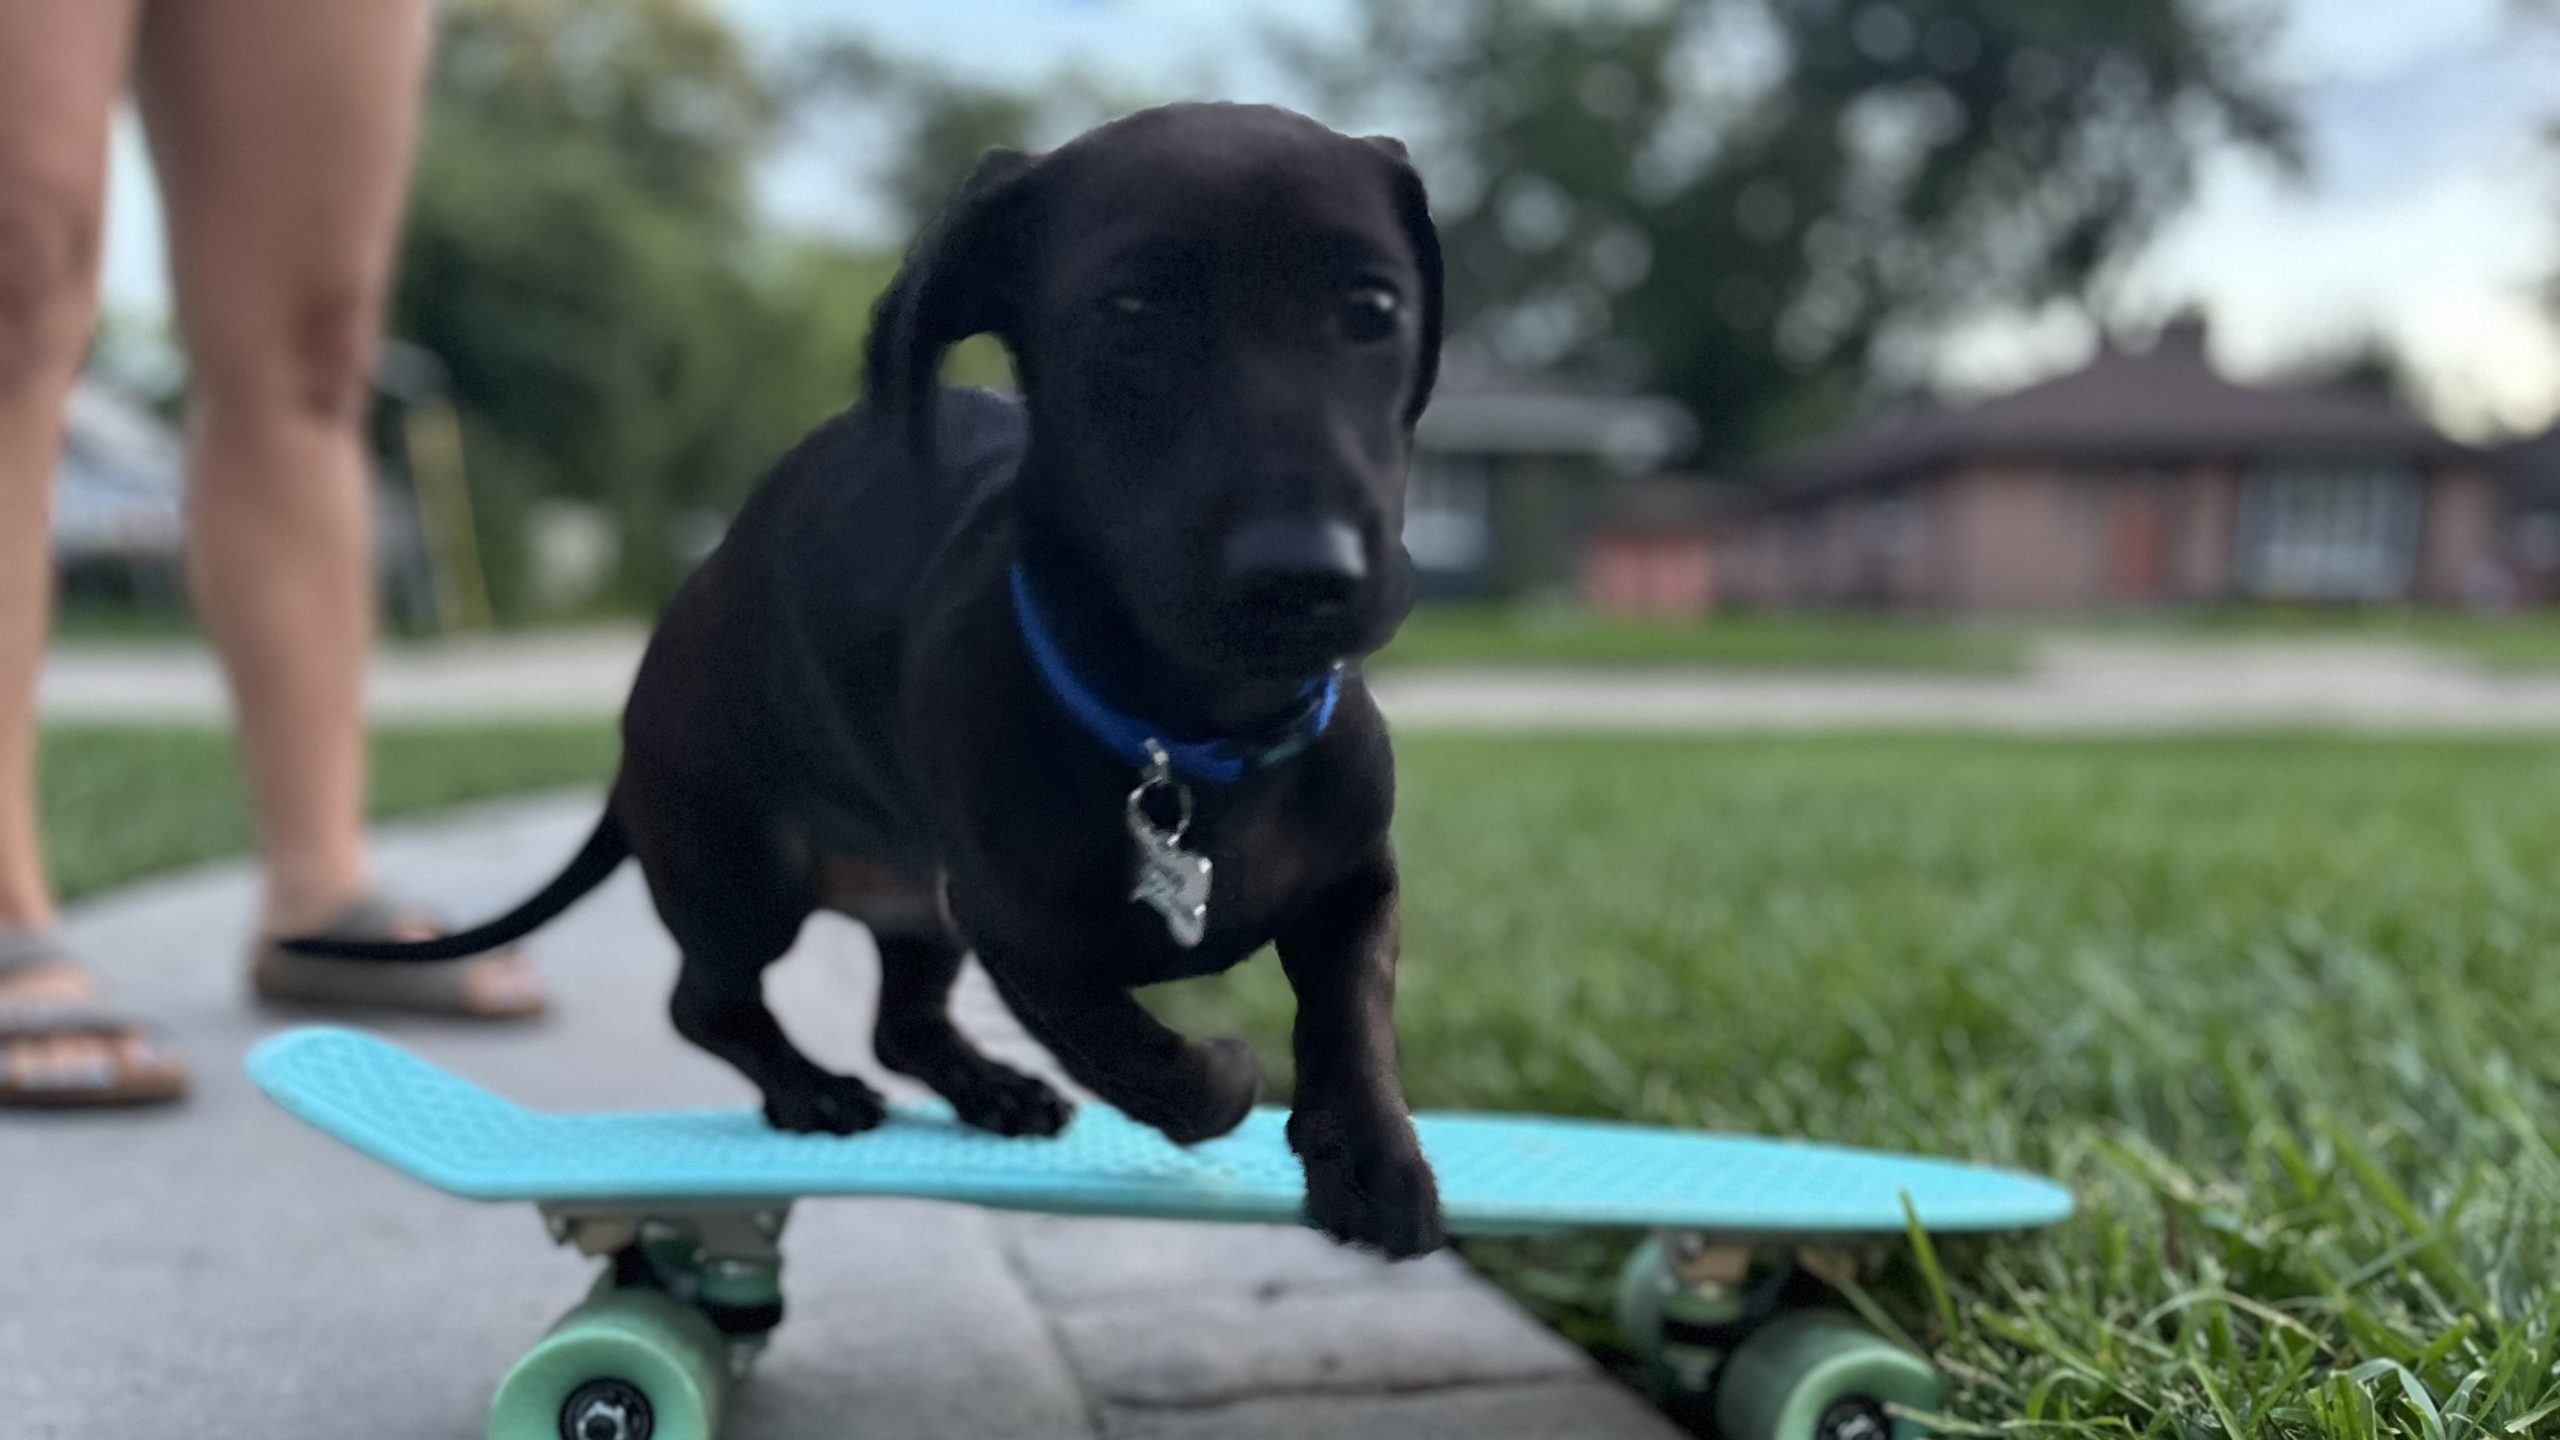 Dog jumping off skateboard.